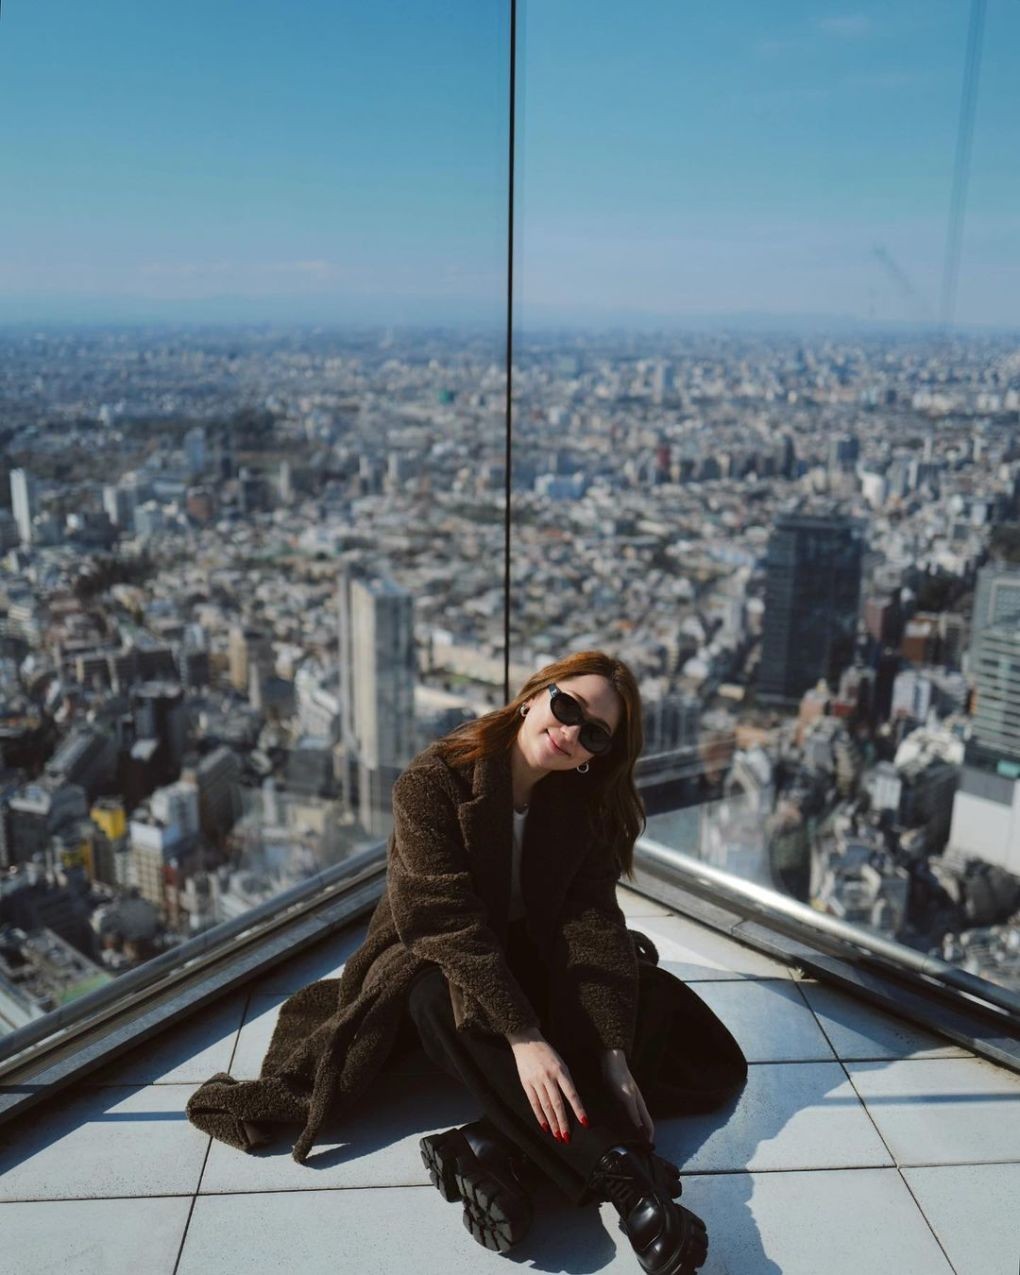 Tòa nhà cao 47 tầng, đài quan sát nằm ở tầng cao nhất, với độ cao 230 mét. Từ đây, du khách có thể chiêm ngưỡng toàn cảnh khu Shibuya và thủ đô Tokyo với view 360 độ không giới hạn, cảm giác có thể chạm vào mây trời. Xung quanh đài quan sát được ốp những tấm kính trong suốt, cường lực, giảm bớt tối đa những thanh gờ chắn, khiến tầm nhìn rộng hơn. Ảnh: Instagram samanthalin